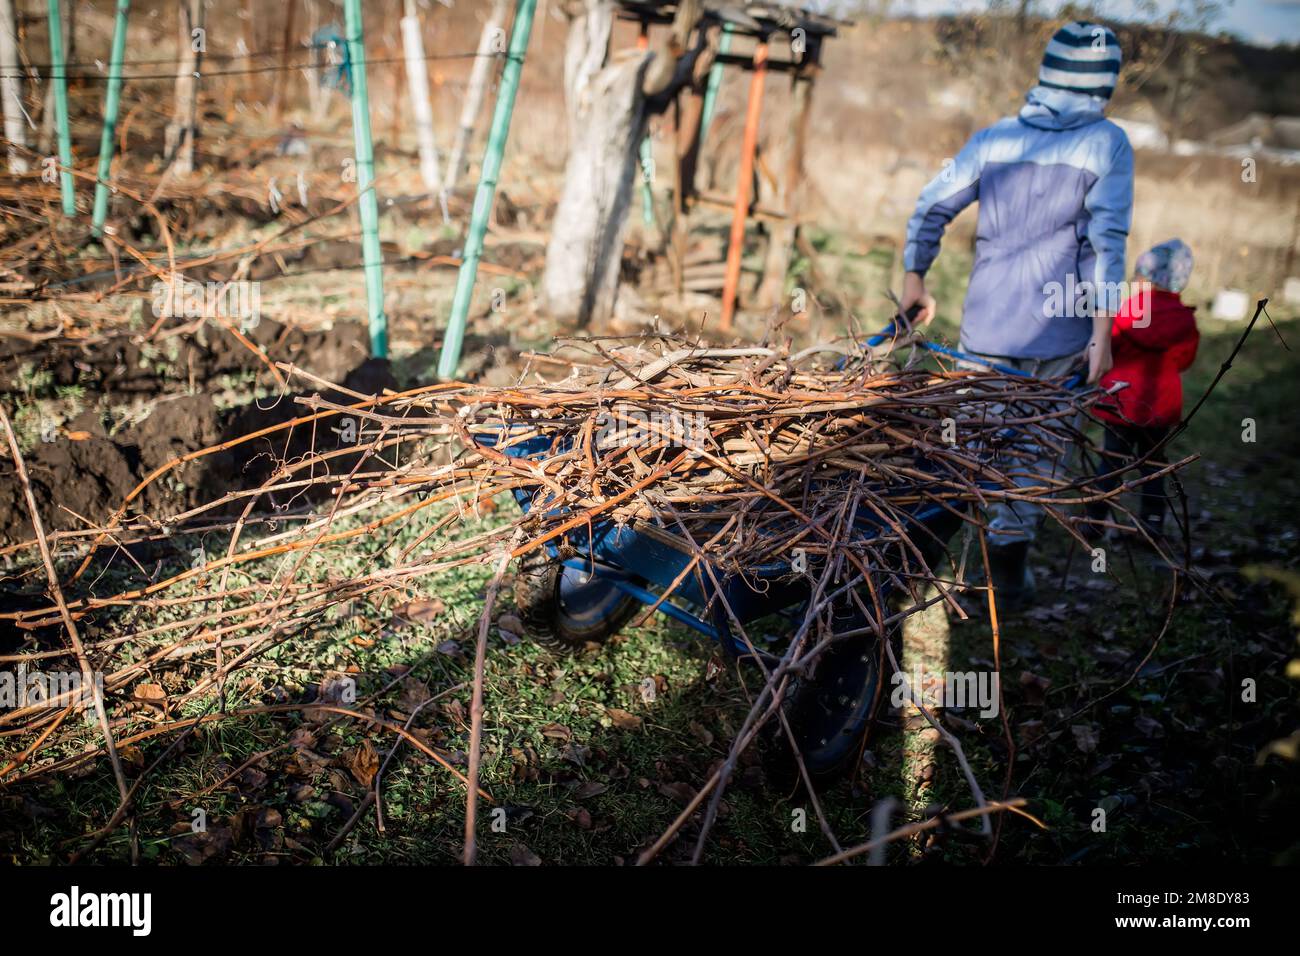 Le garçon aide sa mère au printemps à enlever la vigne de raisin pour préparer le jardin pour le travail de printemps. Un garçon porte des ordures sur une voiturette de jardin. Banque D'Images